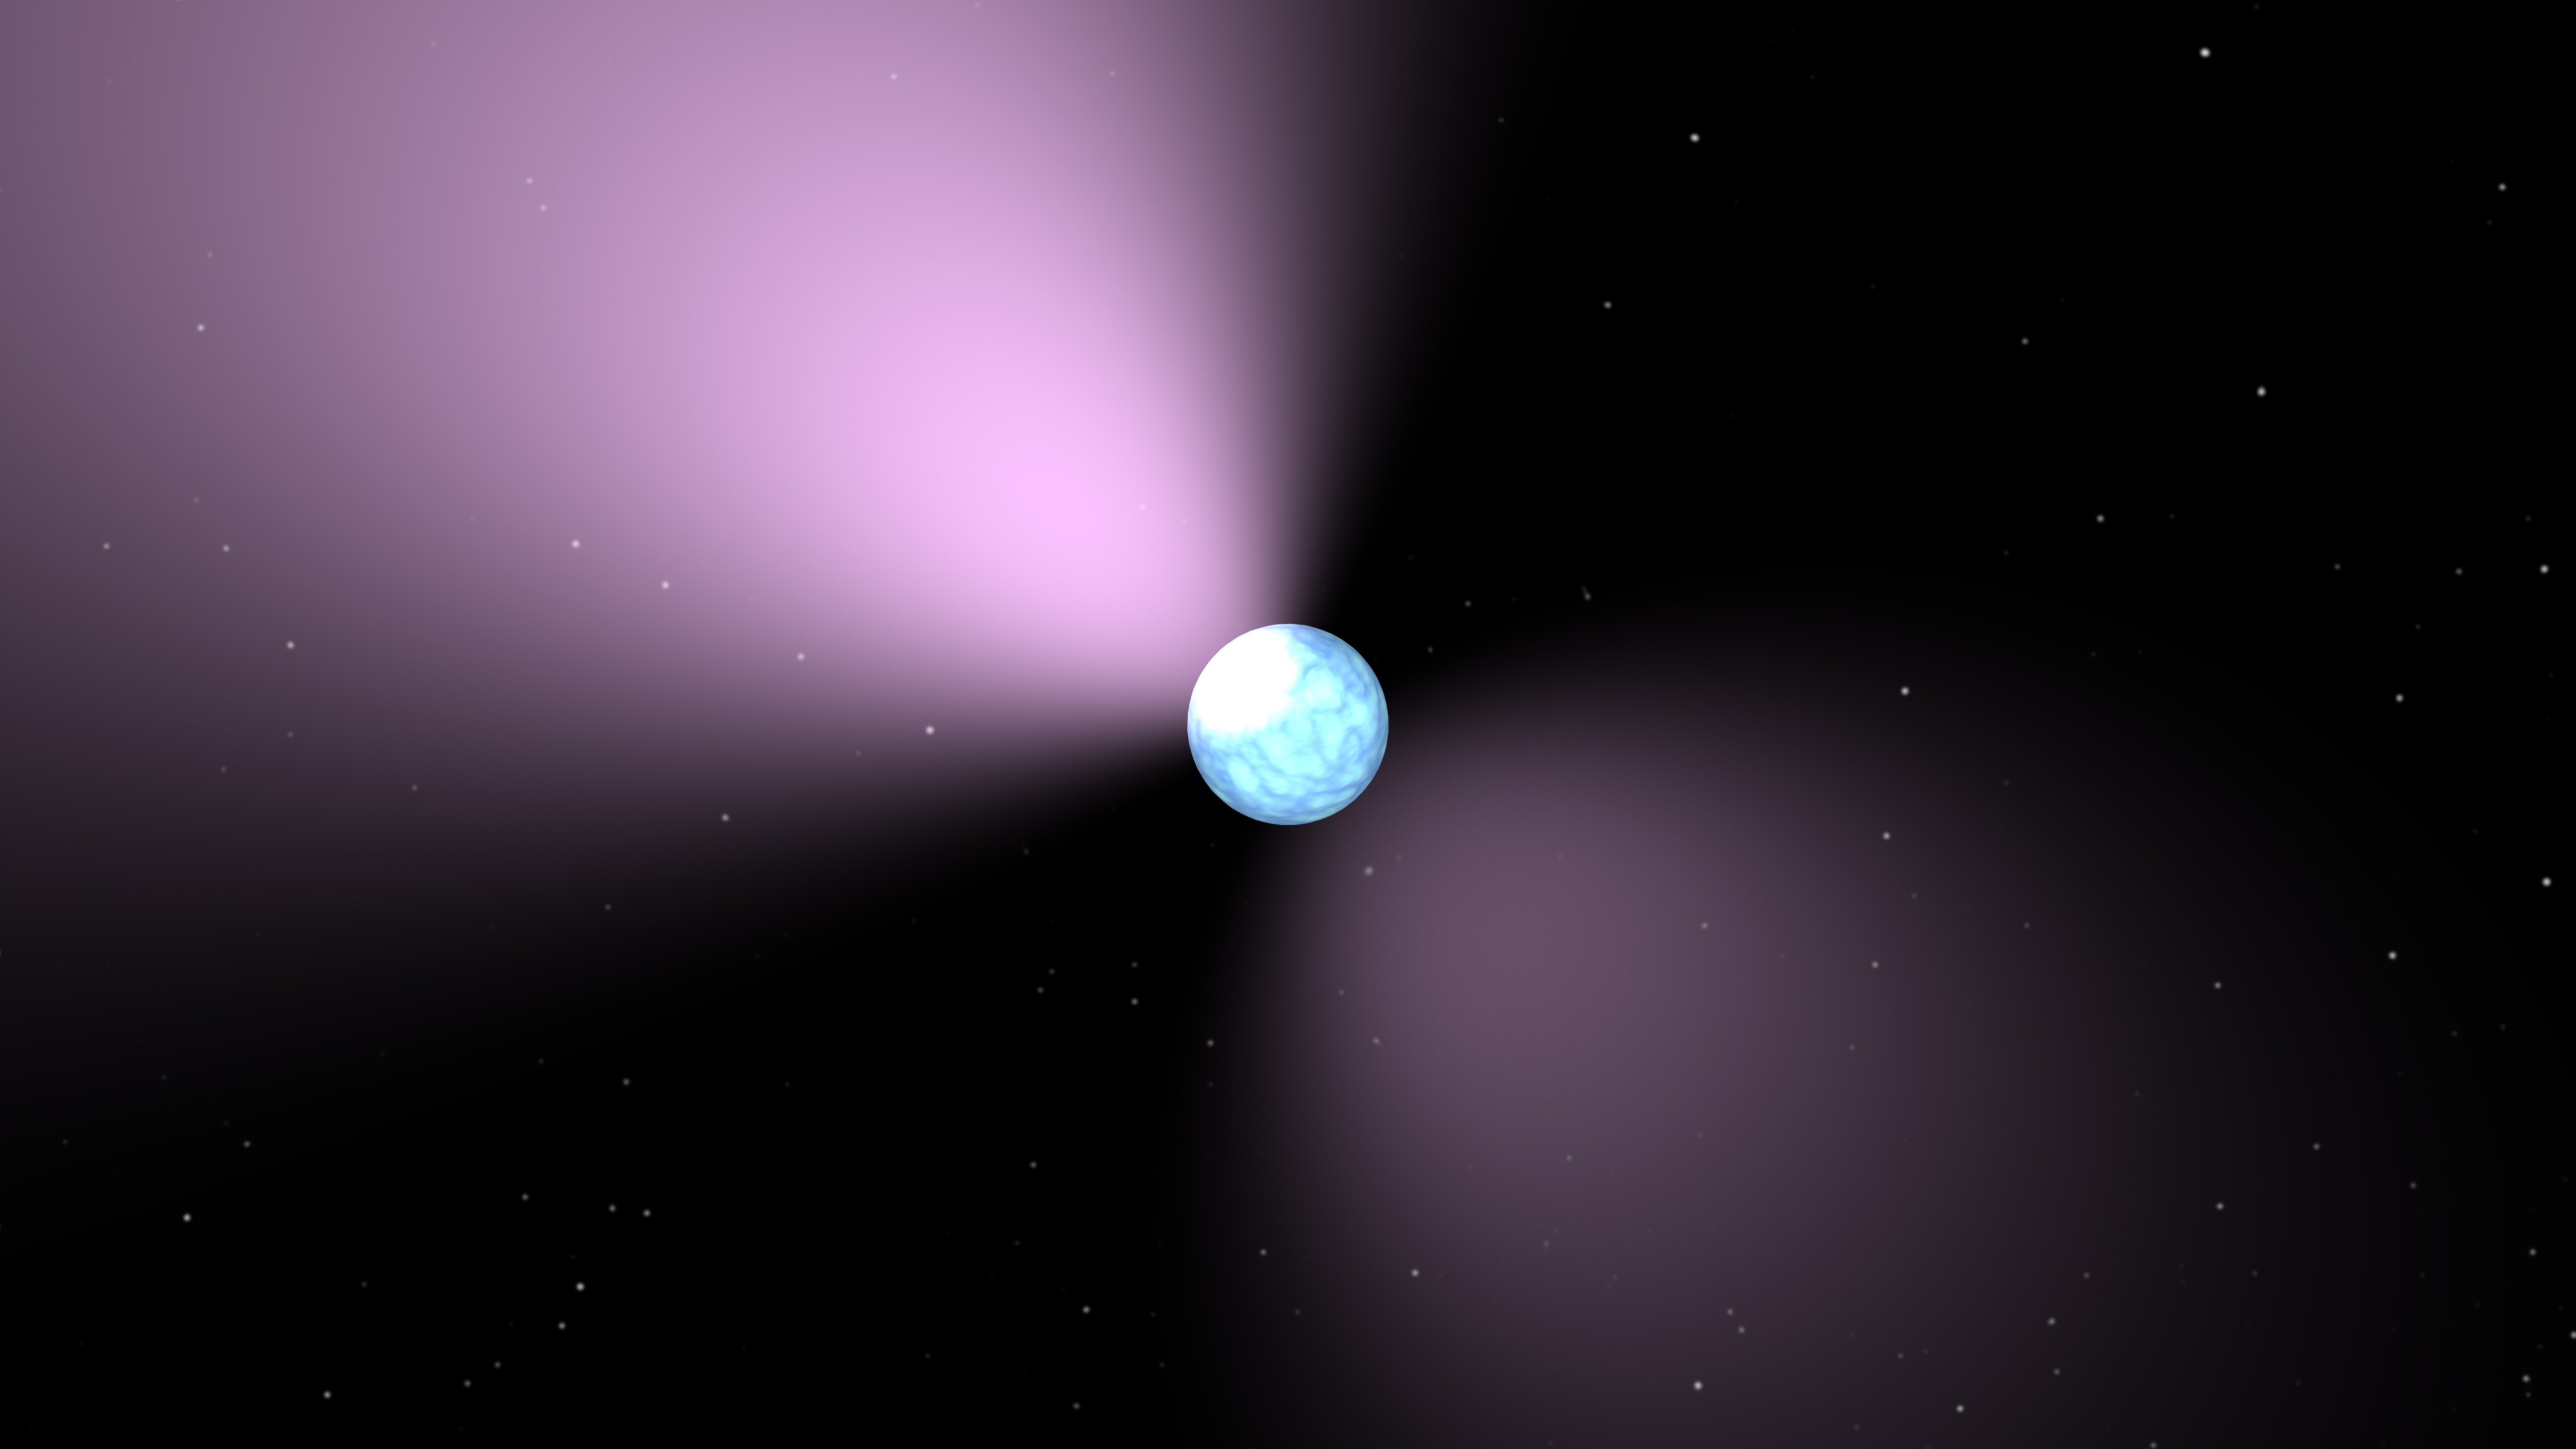 Concepção artística de um pulsar.  (Foto: NASA)